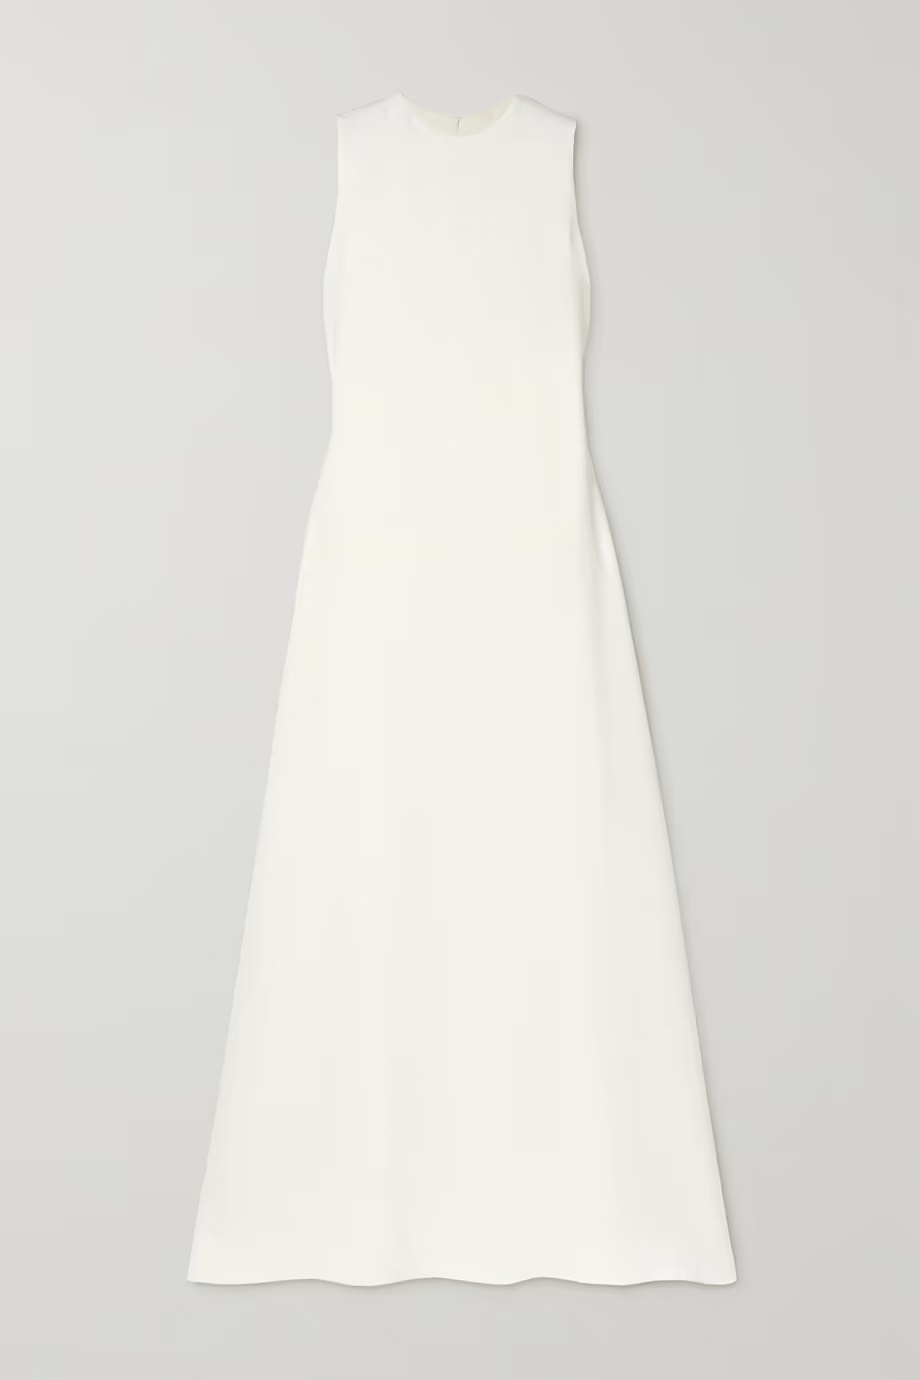 Где купить белоснежное платье как у Кайли Дженнер?